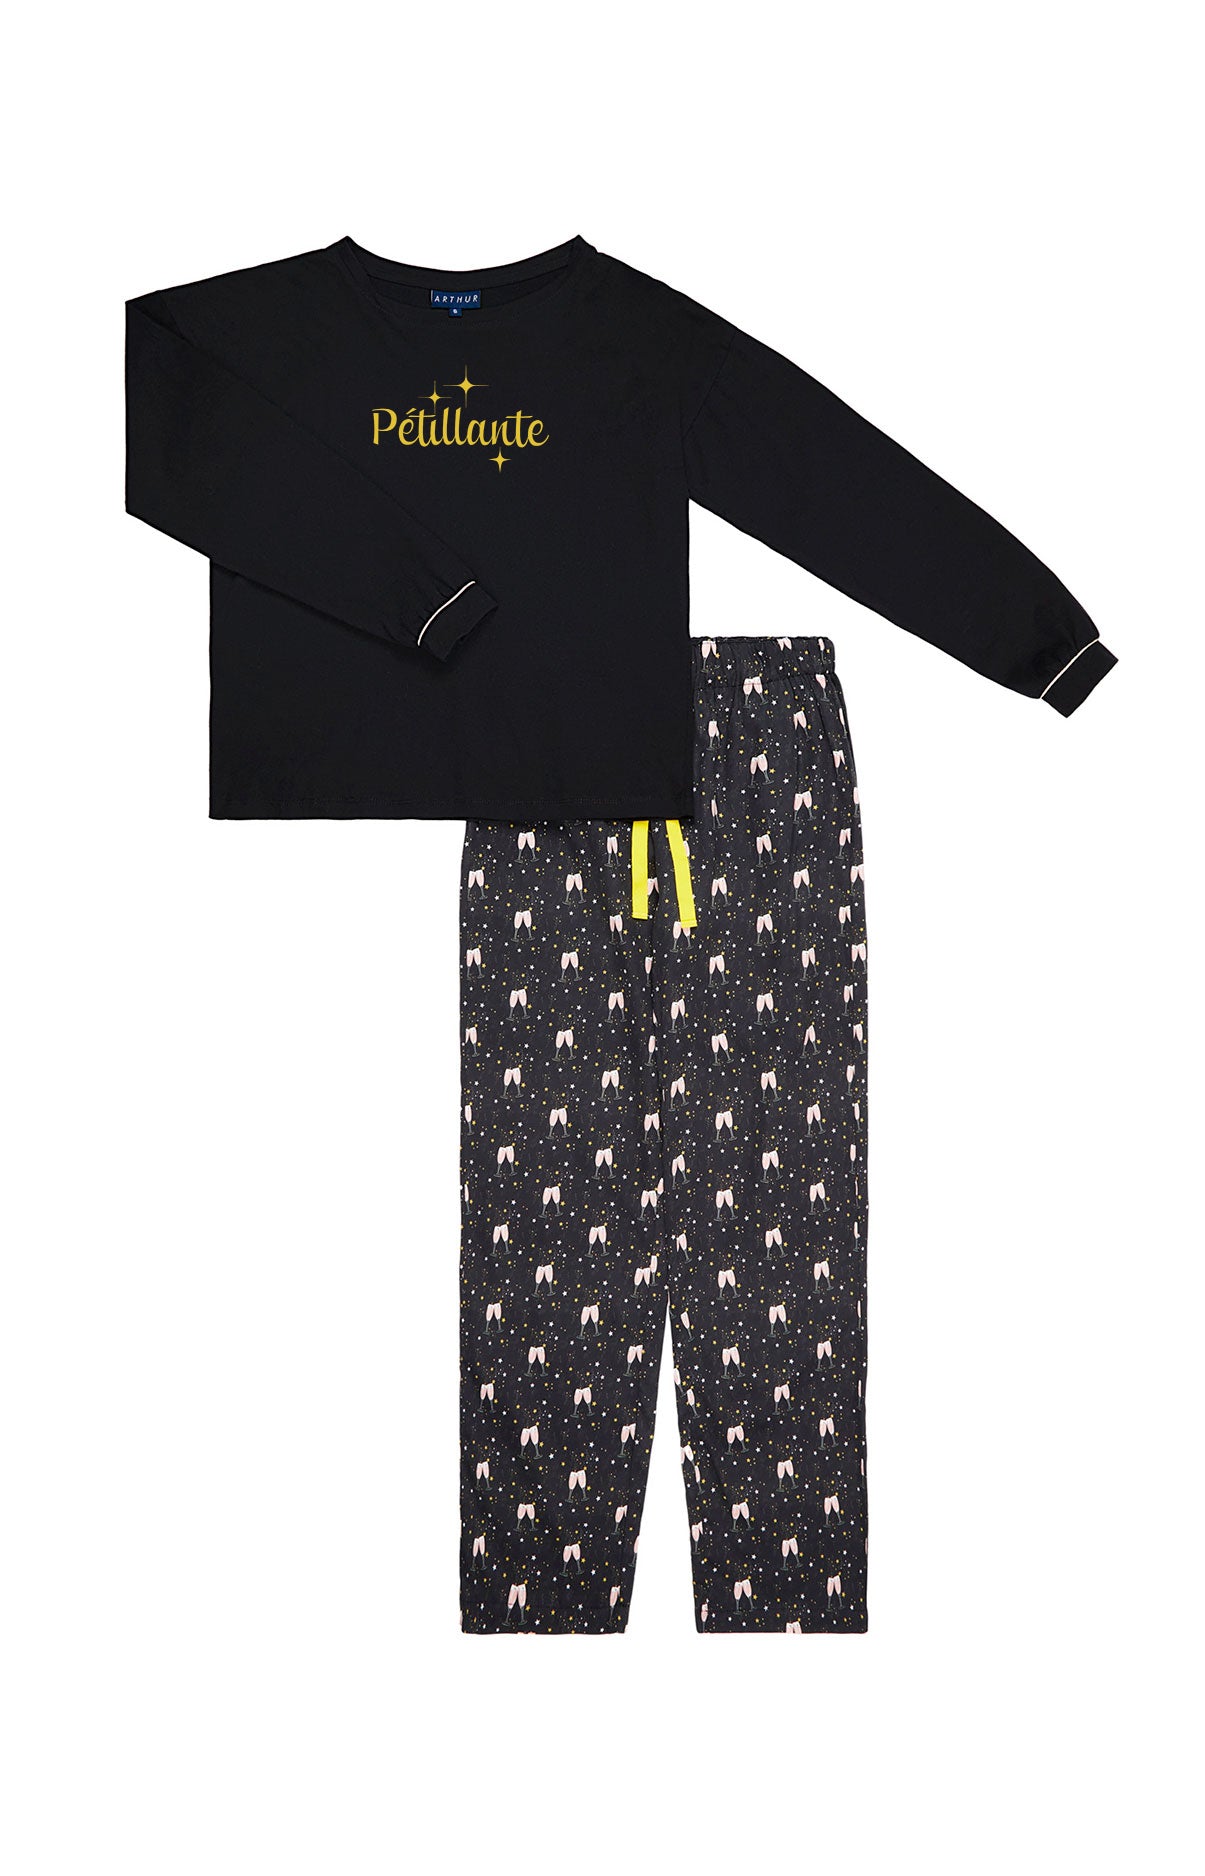 Pyjama - Pétillante